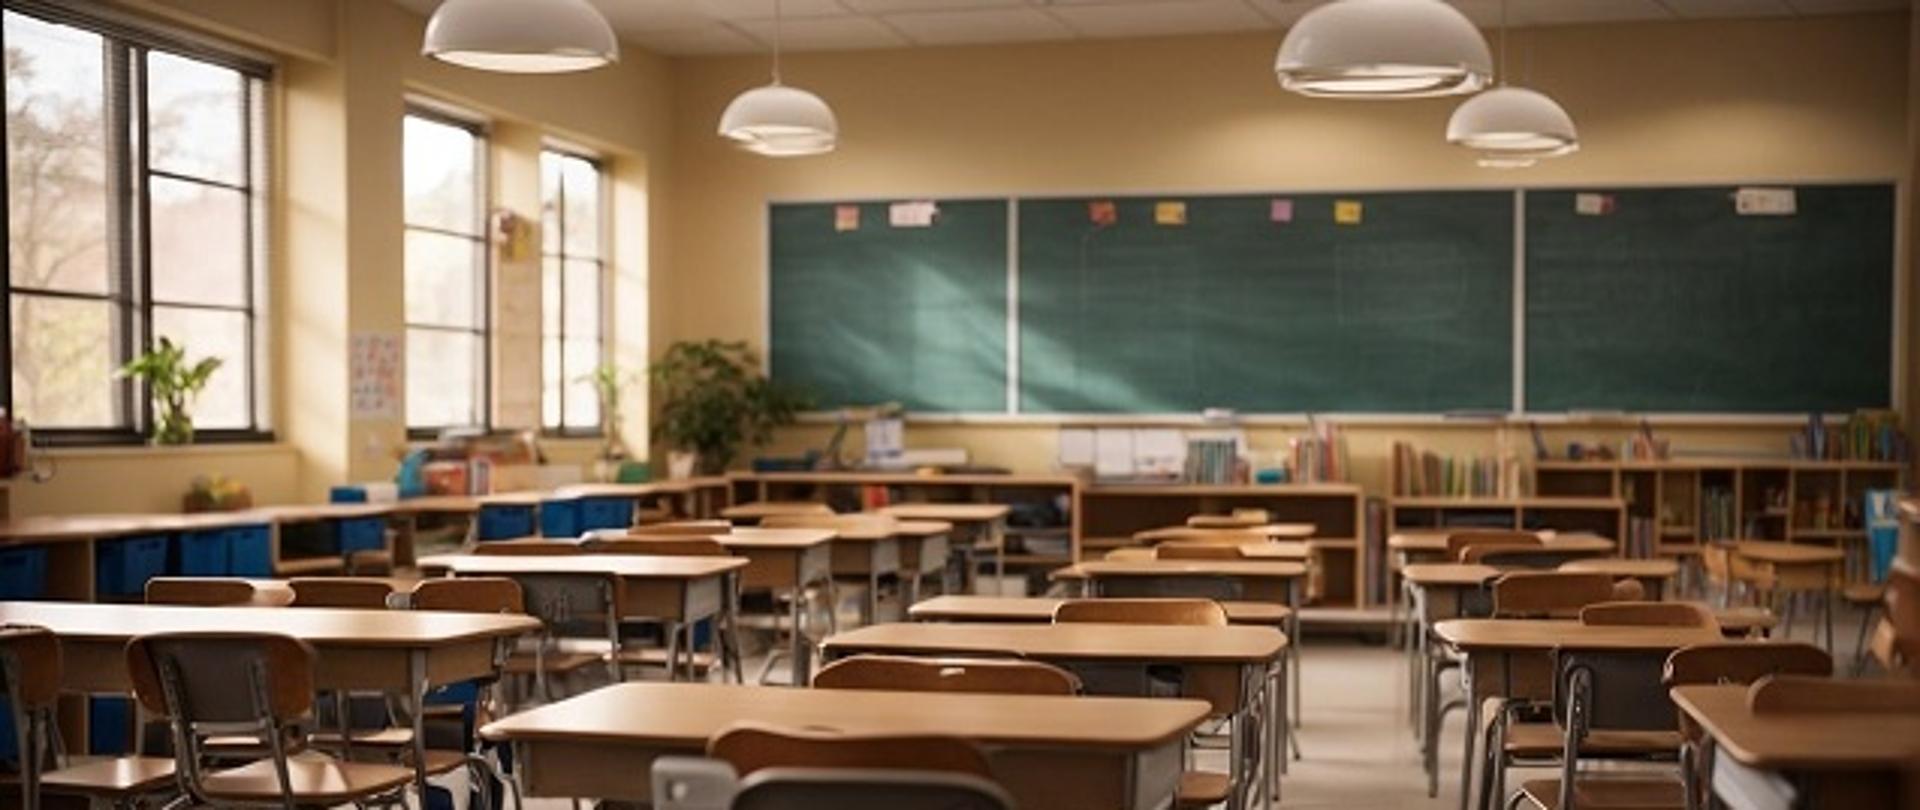 Sala lekcyjna w szkole bez uczniów, widać biurka i krzesła, dużą tablicę oraz zamknięte okna